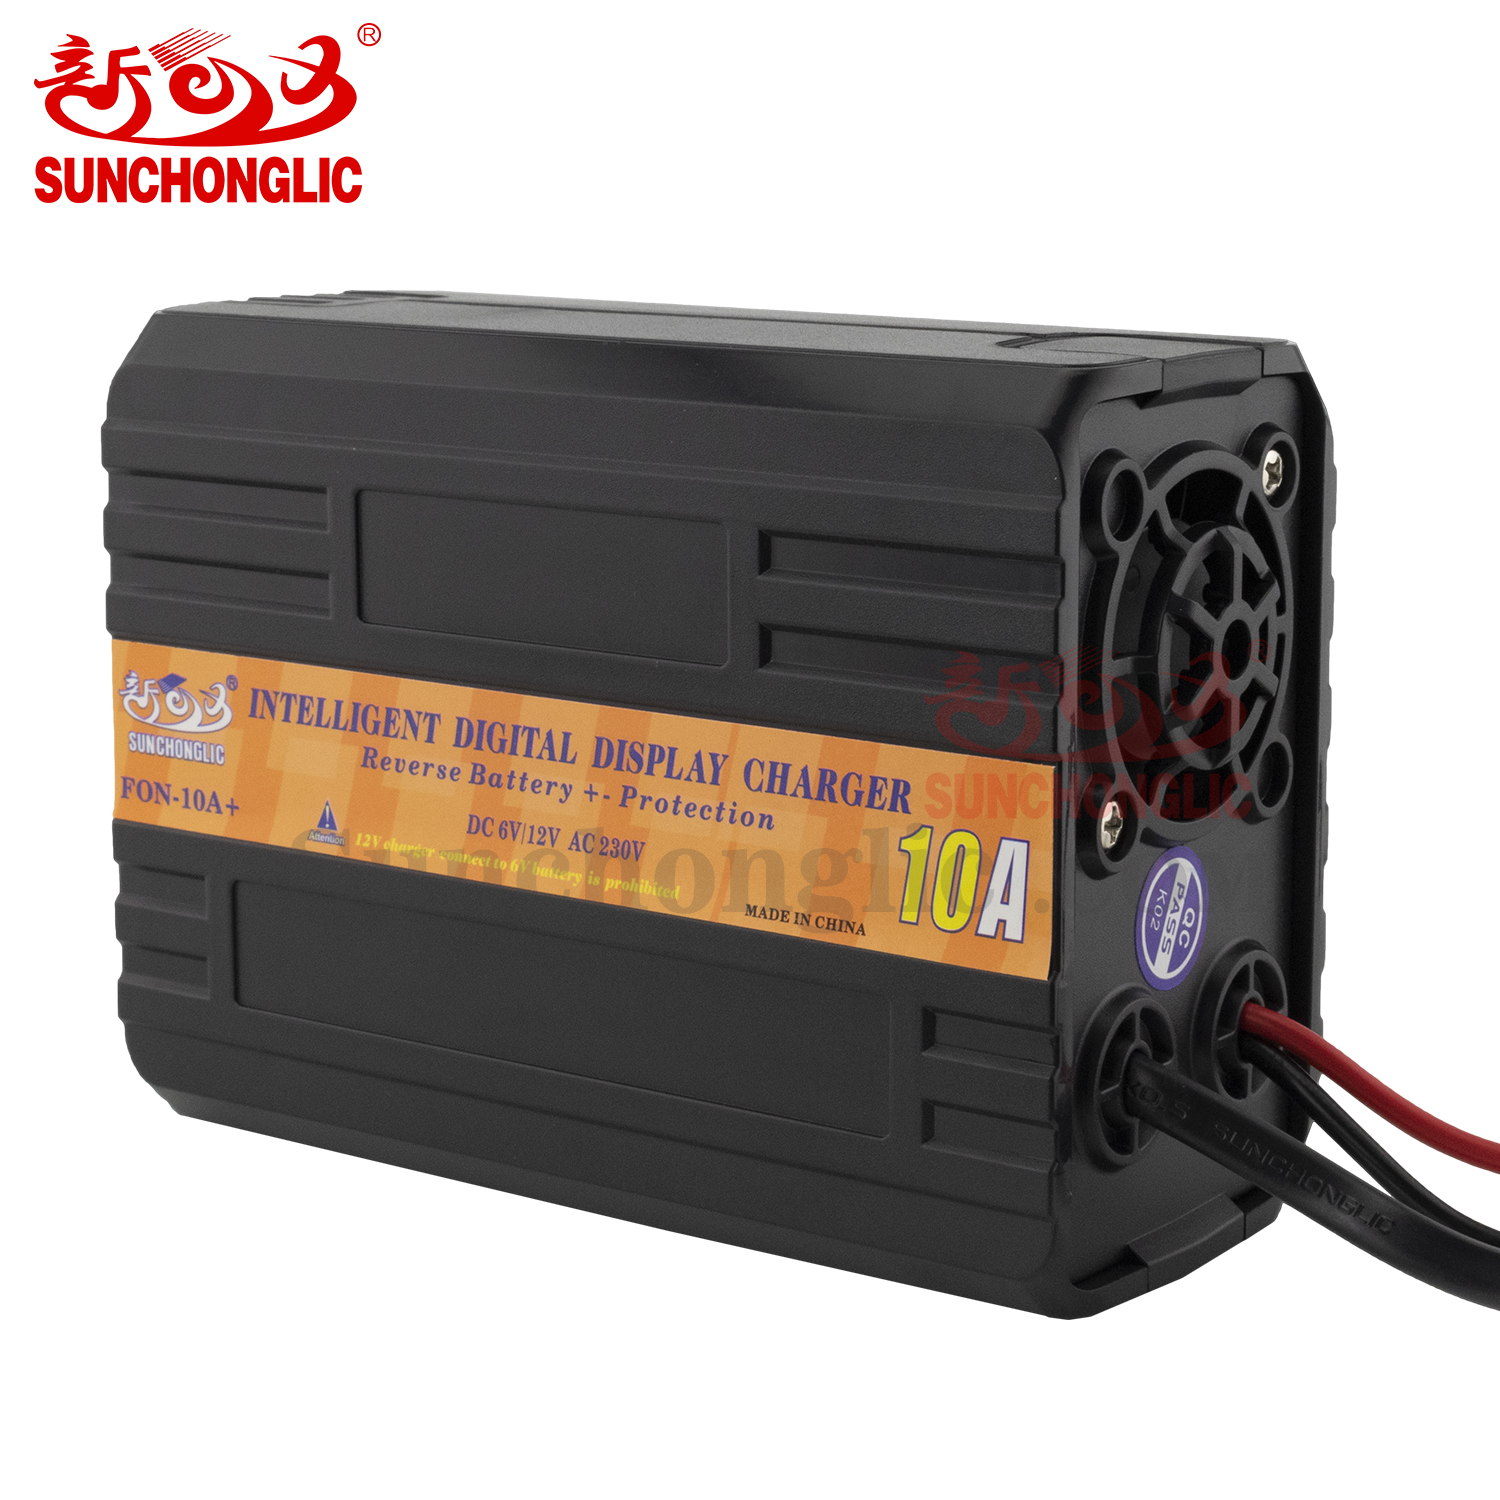 Fast charging 6V 12V lead acid battery charger